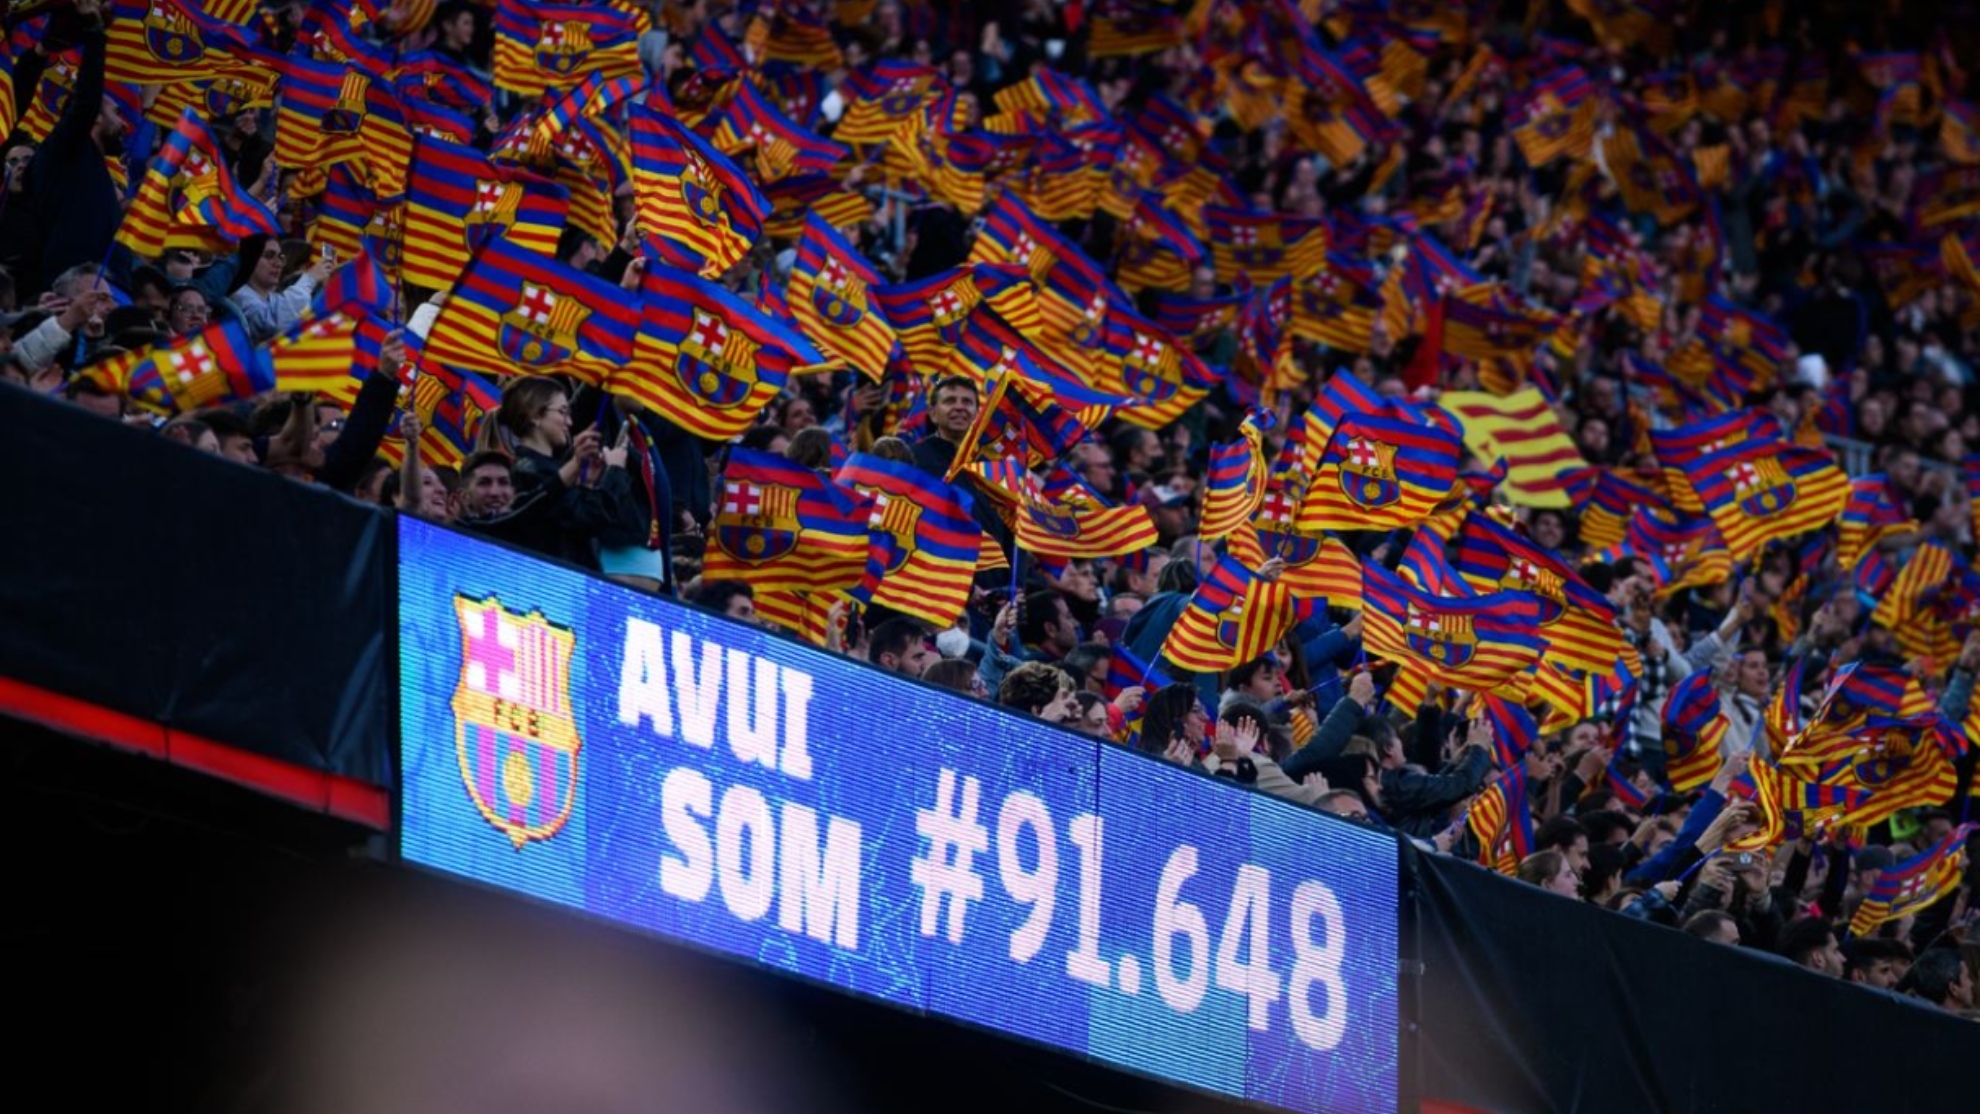 Barcelona Femenil impone una nueva marca de espectadores 91,648 en...